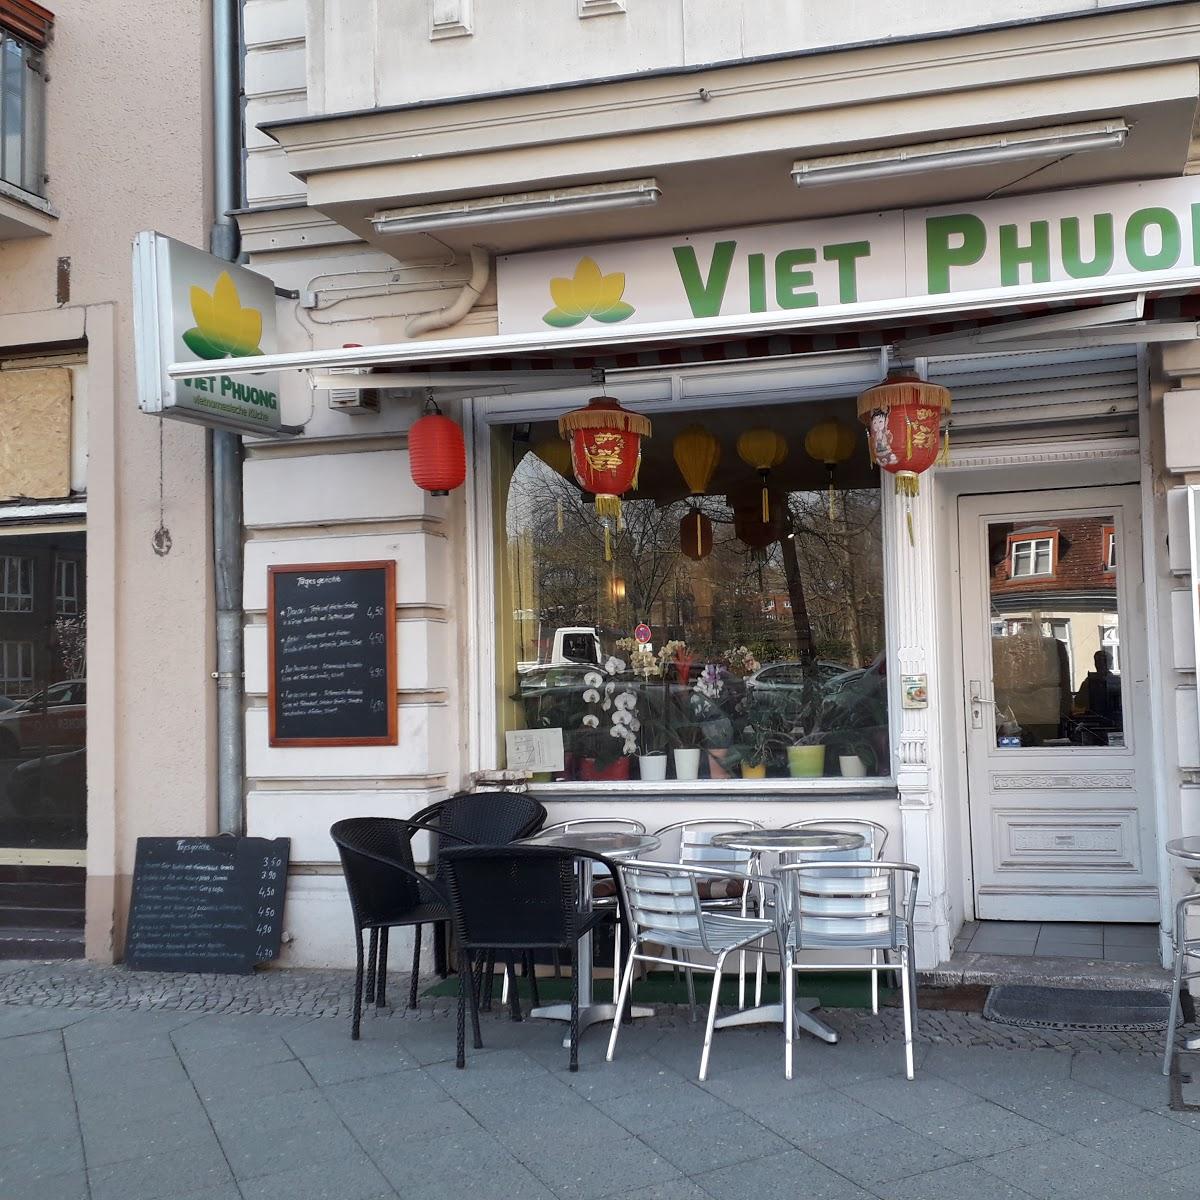 Restaurant "Viet Phuong - vietnamesische Küche" in Berlin